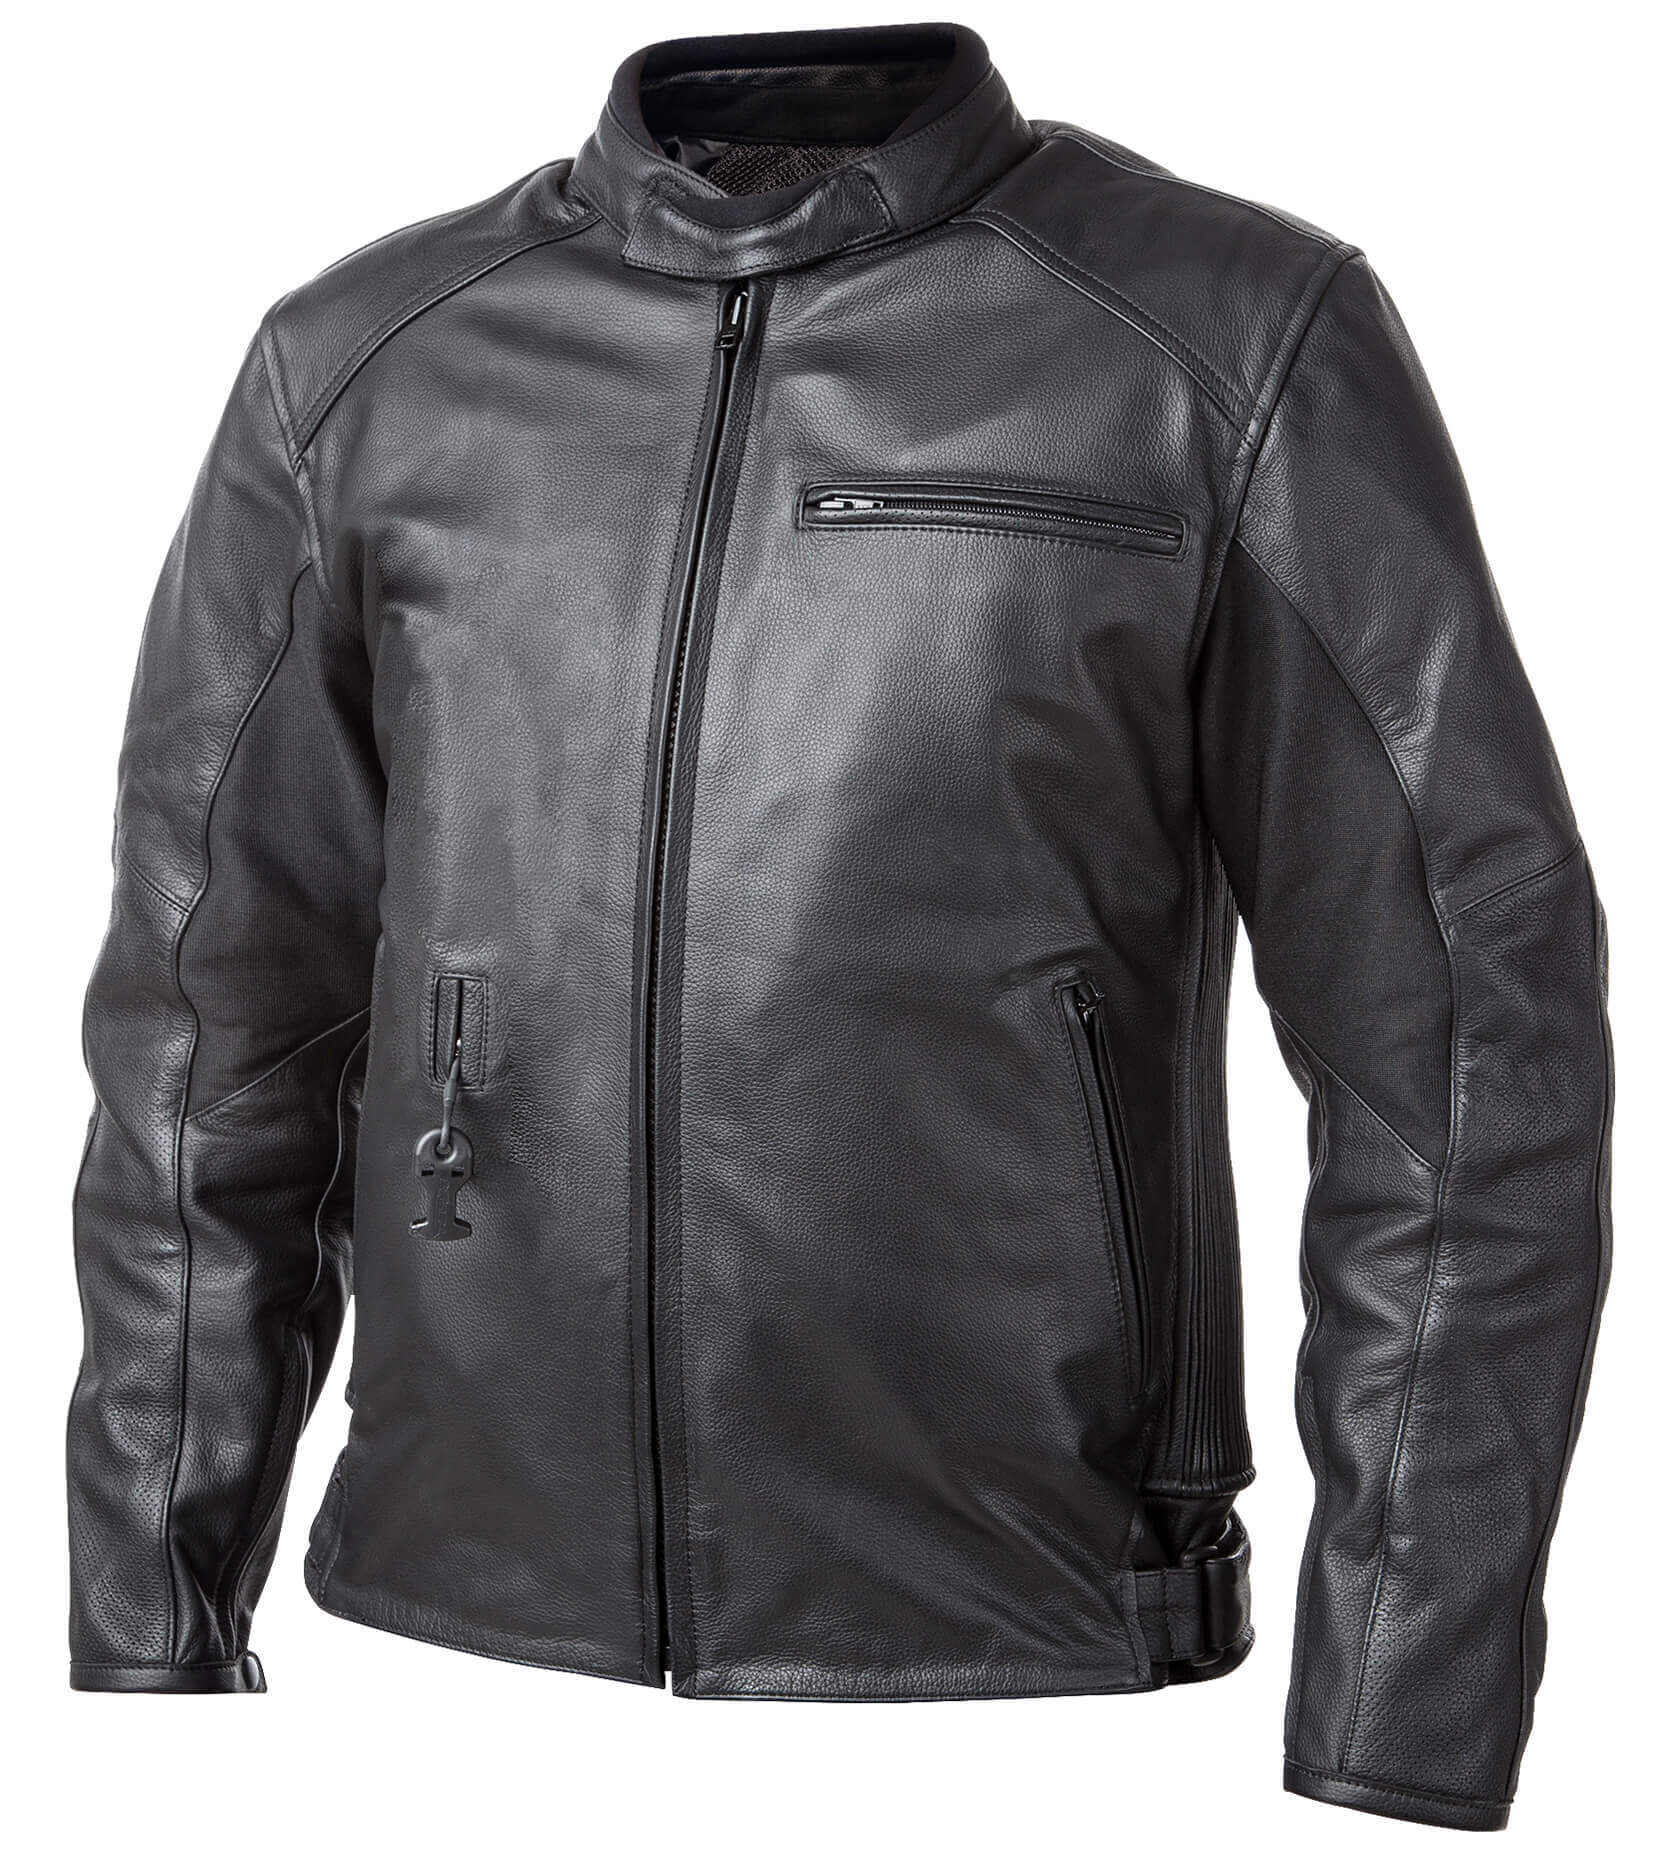 Airbag kabát Helite Roadster Vintage fekete bőr  Fekete  3XL